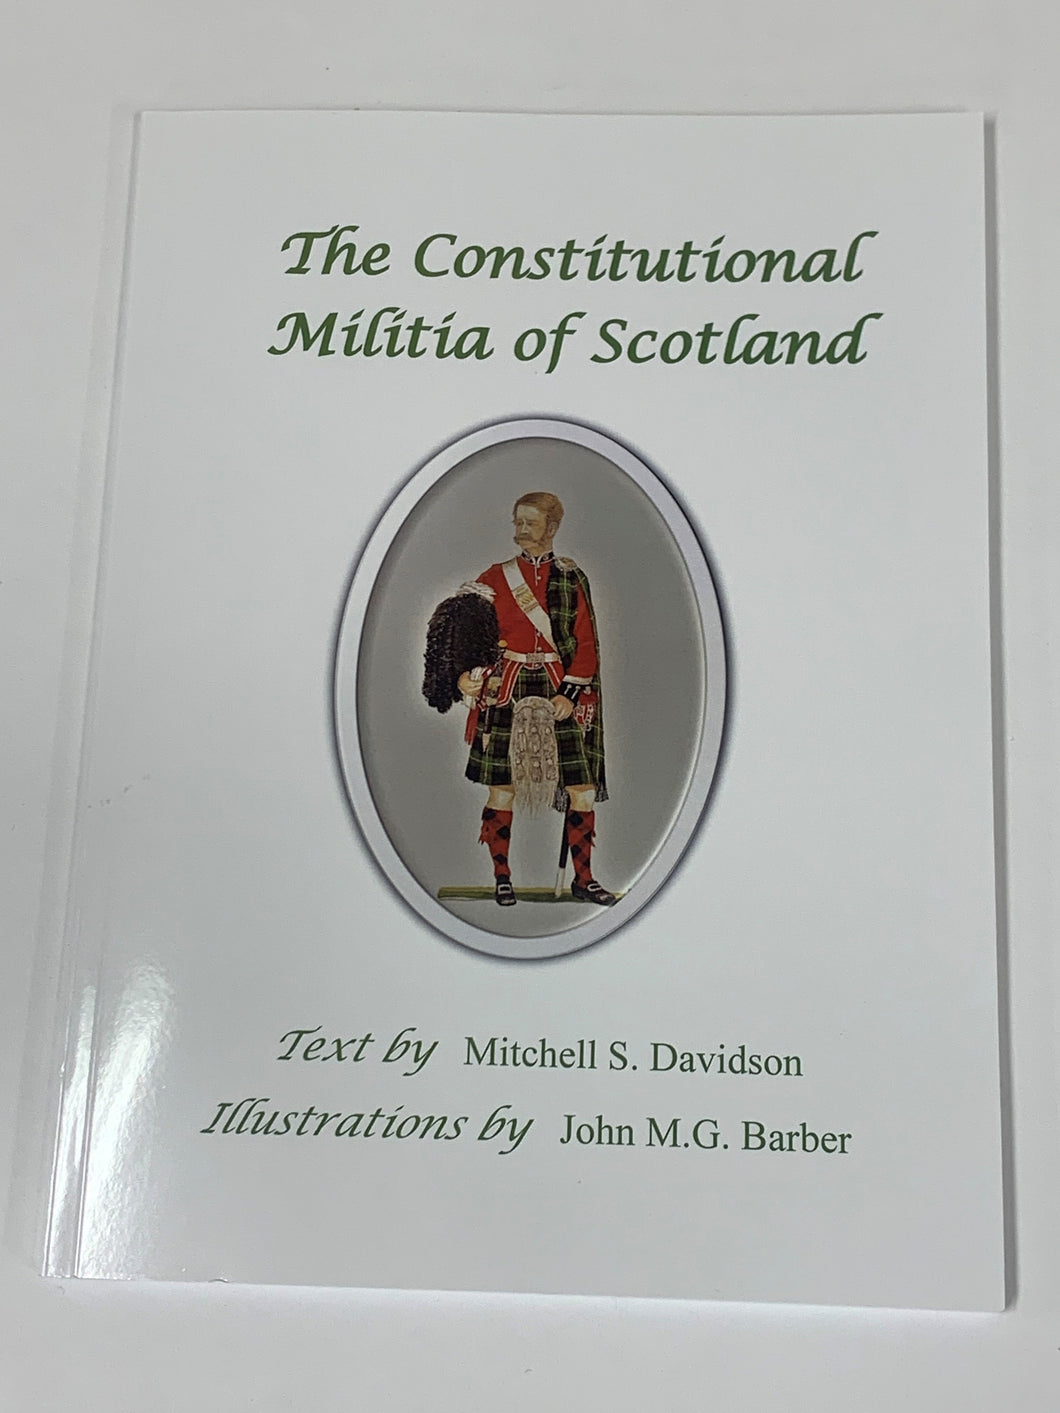 The Constitutional Militia of Scotland